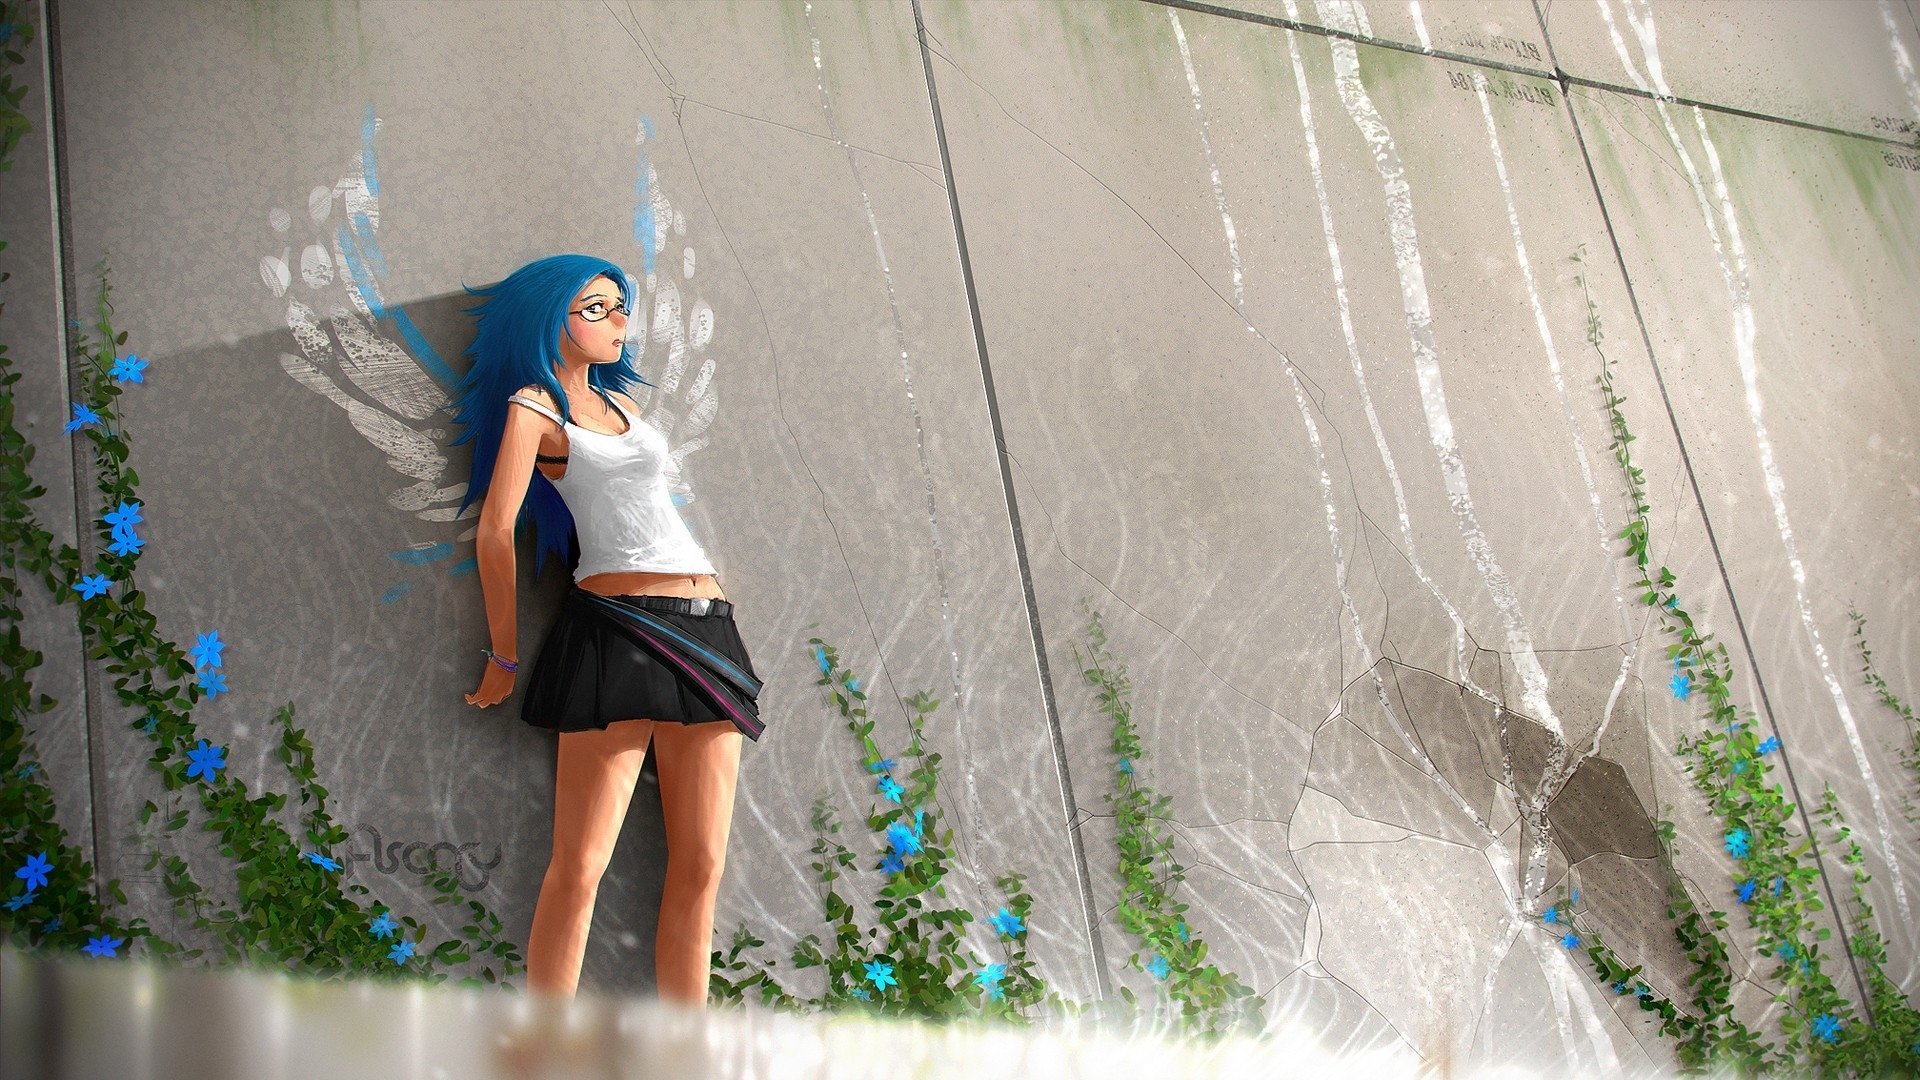 art,  , Anime, Girl, Wall, Skirt, Glasses, Blue, Hair Wallpaper